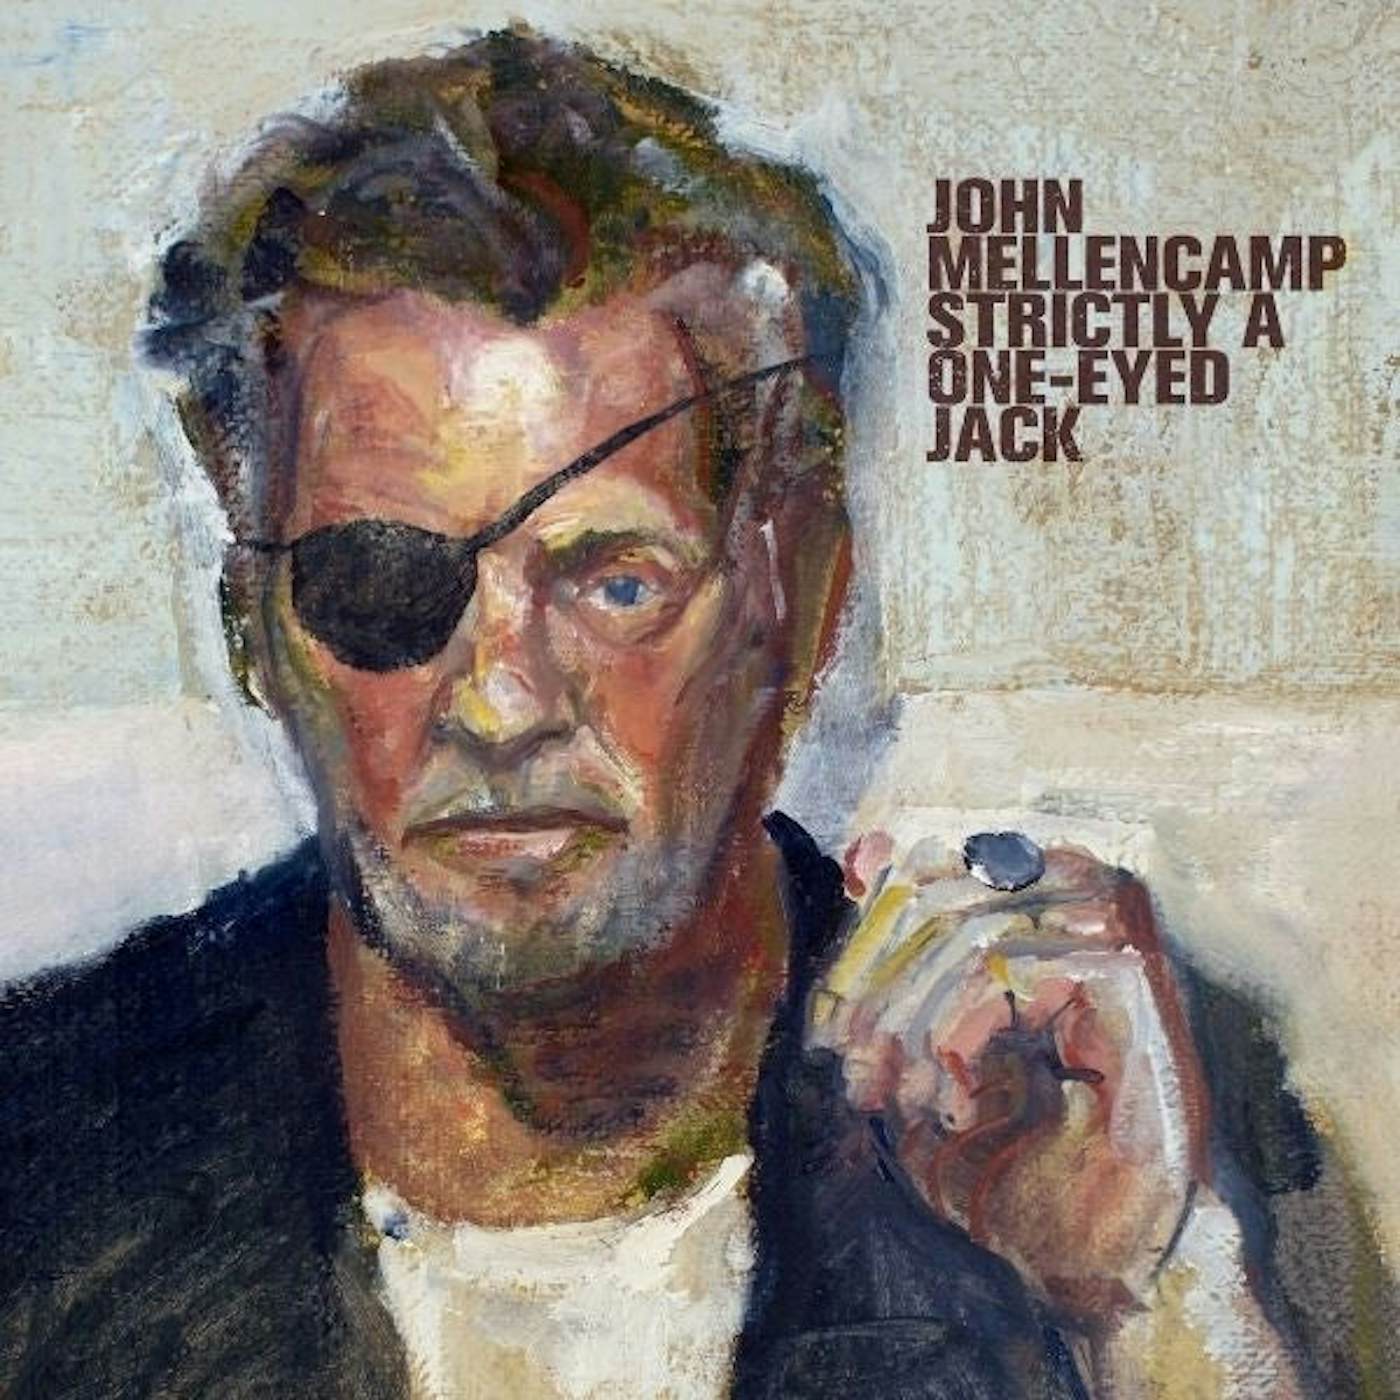 John Mellencamp Strictly A One-Eyed Jack Vinyl Record